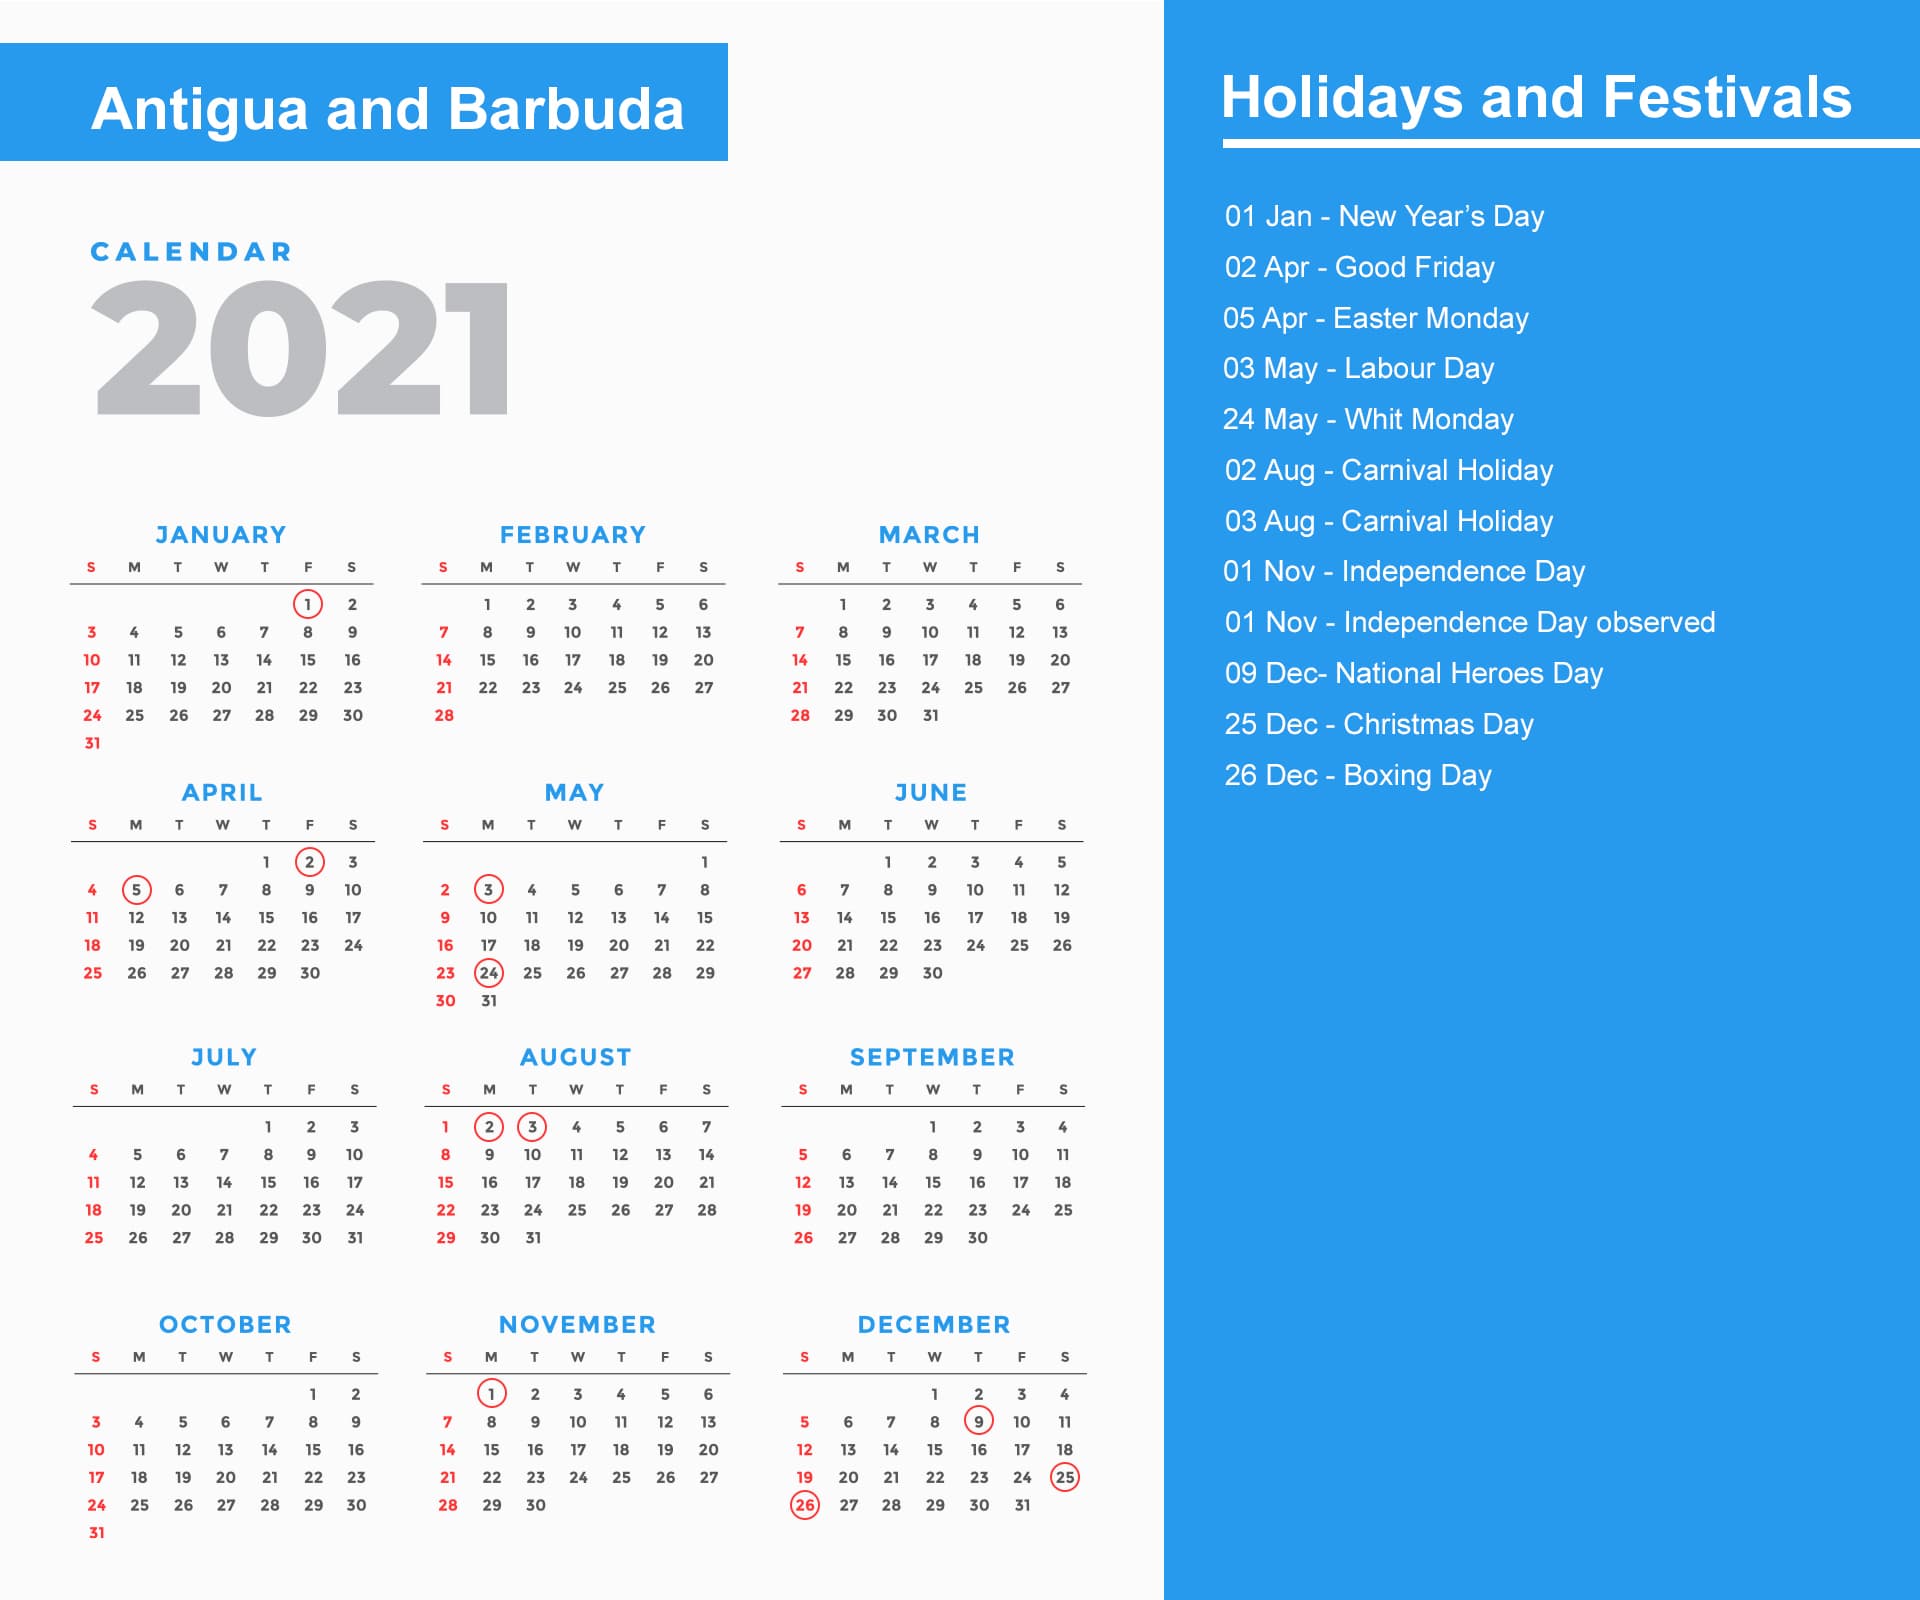 Antigua and Barbuda Holidays Calendar 2021